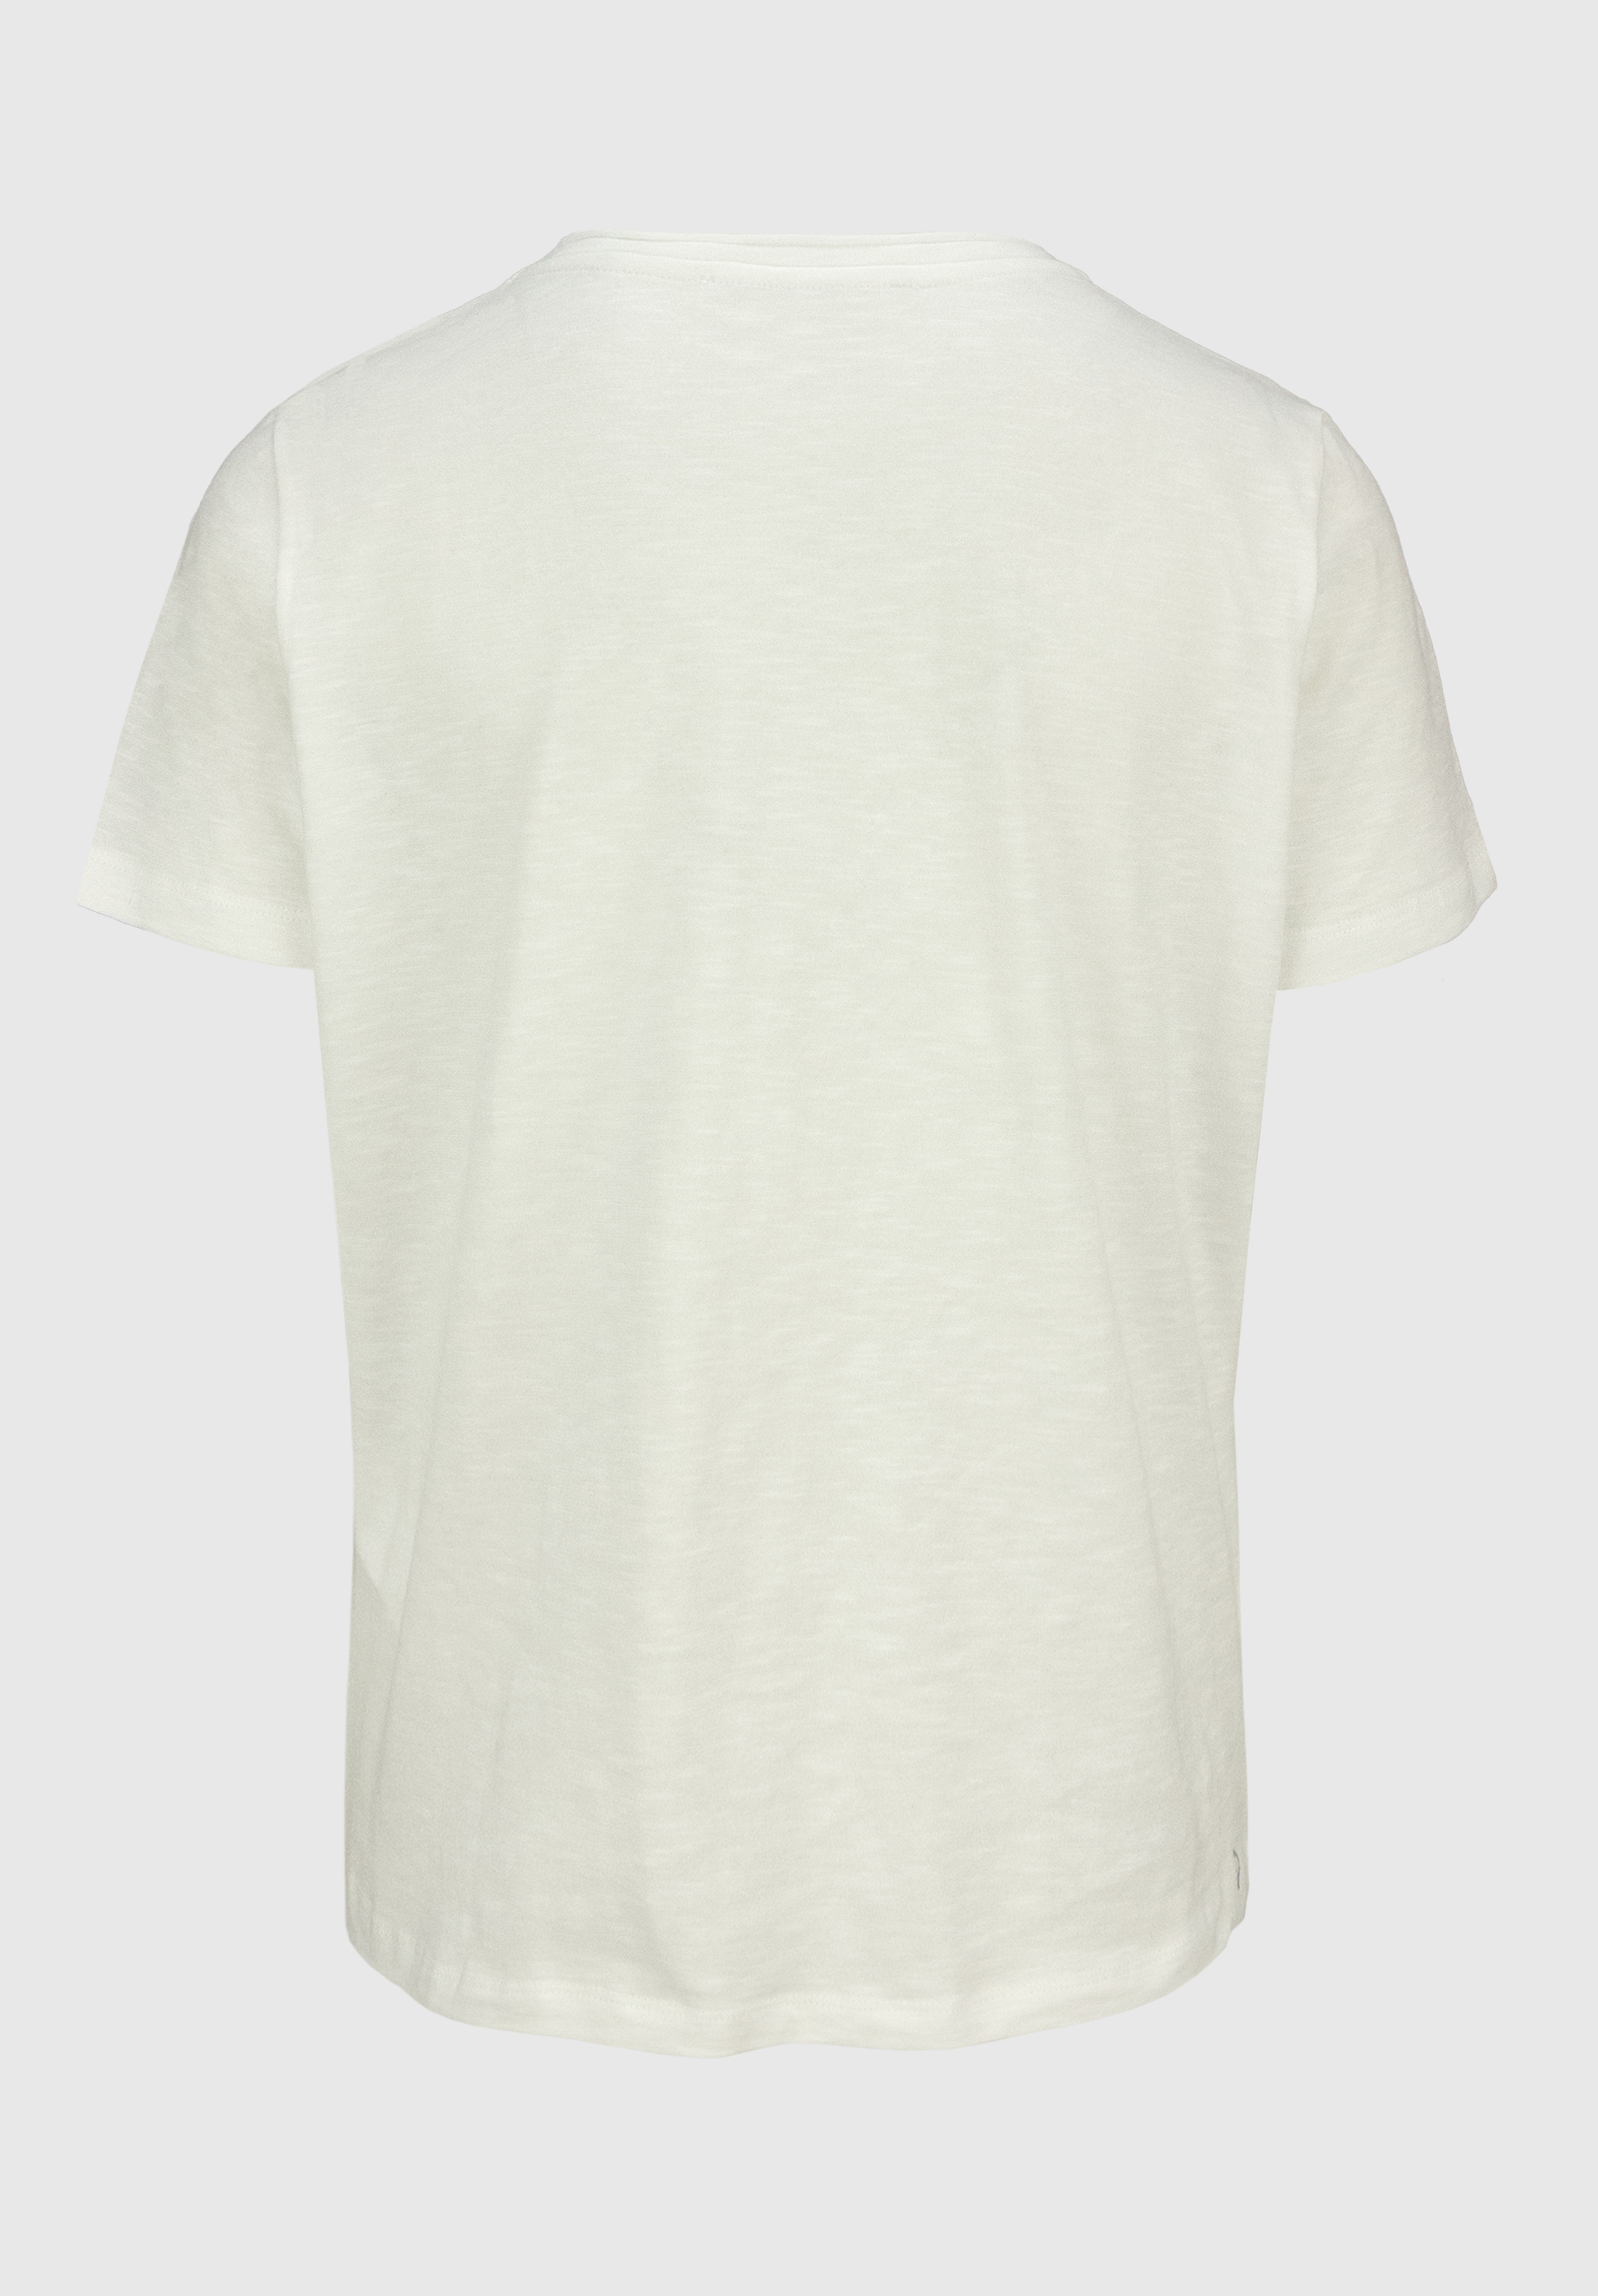 Baumwoll-T-Shirt "DINIA" mit modischem Wording-Print